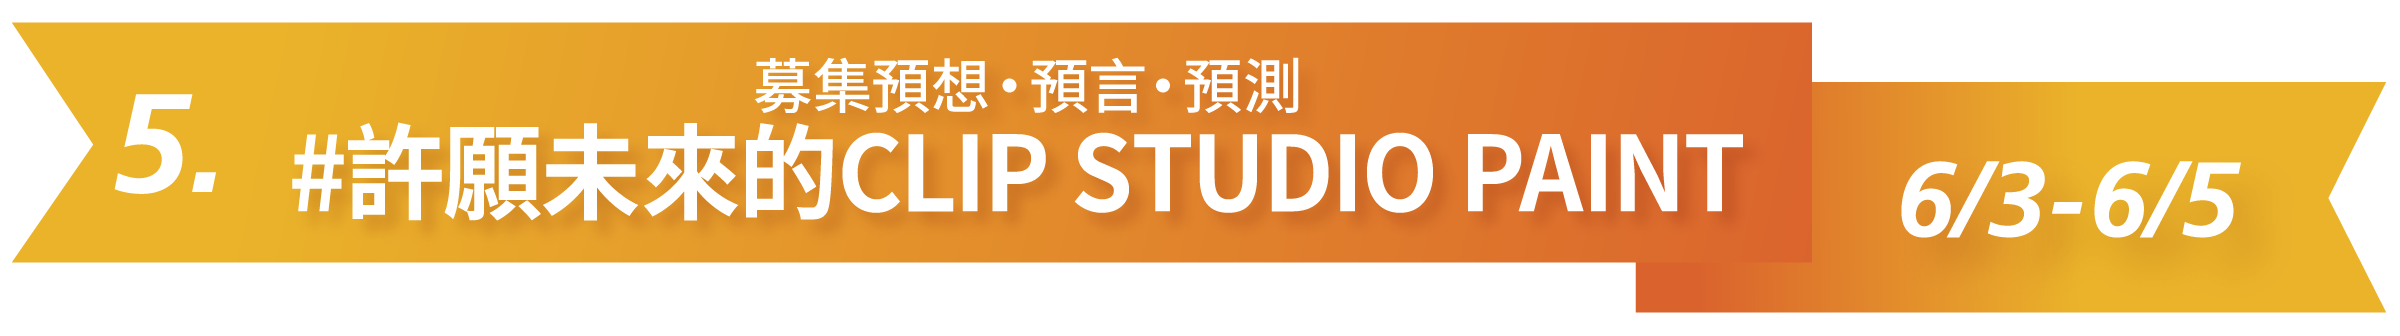 5. 募集預想・預言・預測 #許願未來的CLIP STUDIO PAINT 6/3-6/5